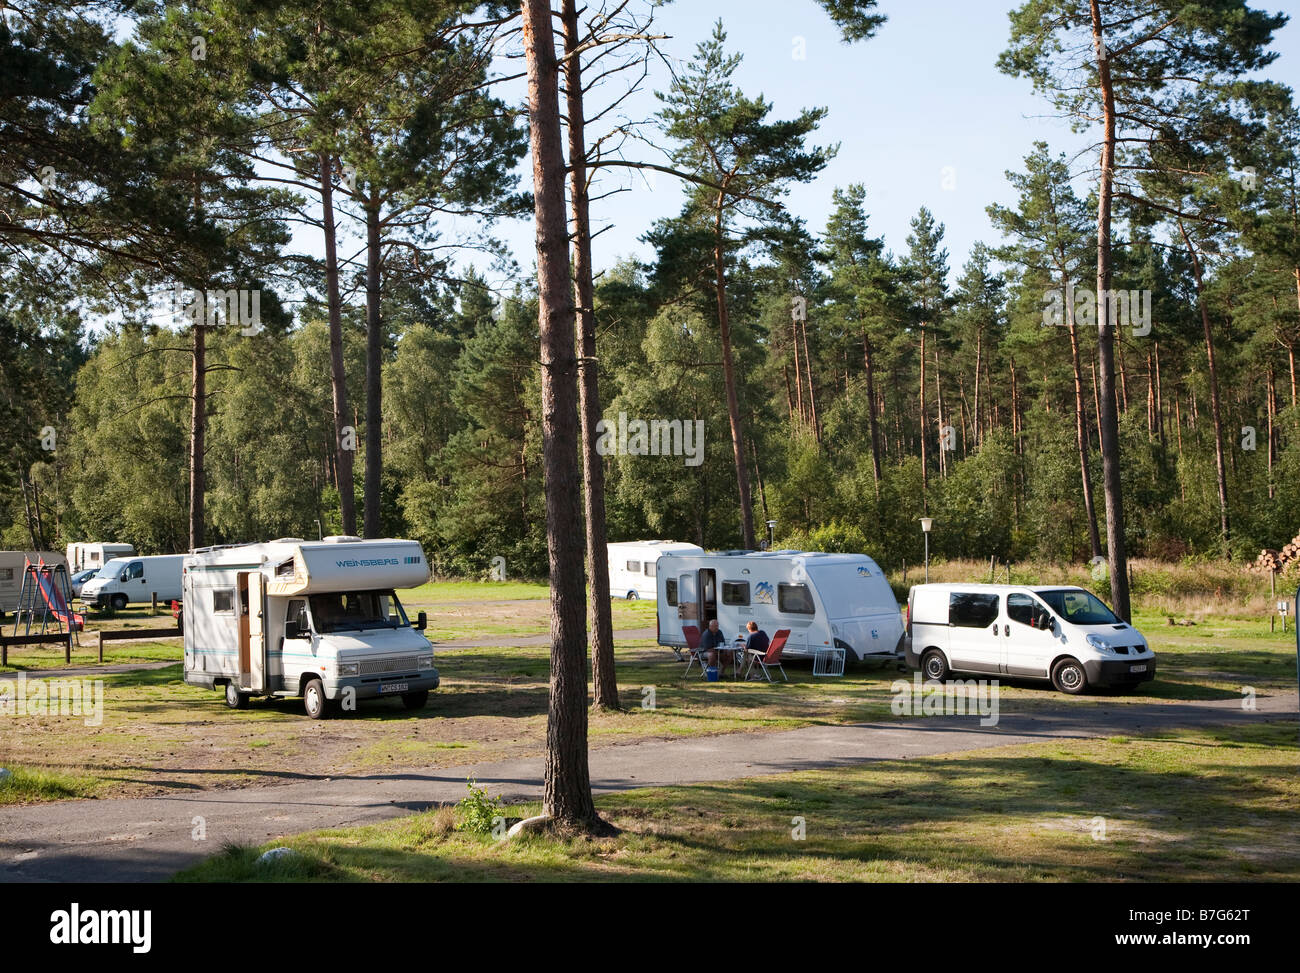 Wohnmobile auf Campingplatz im Wald Lübeck Deutschland Stockfotografie -  Alamy